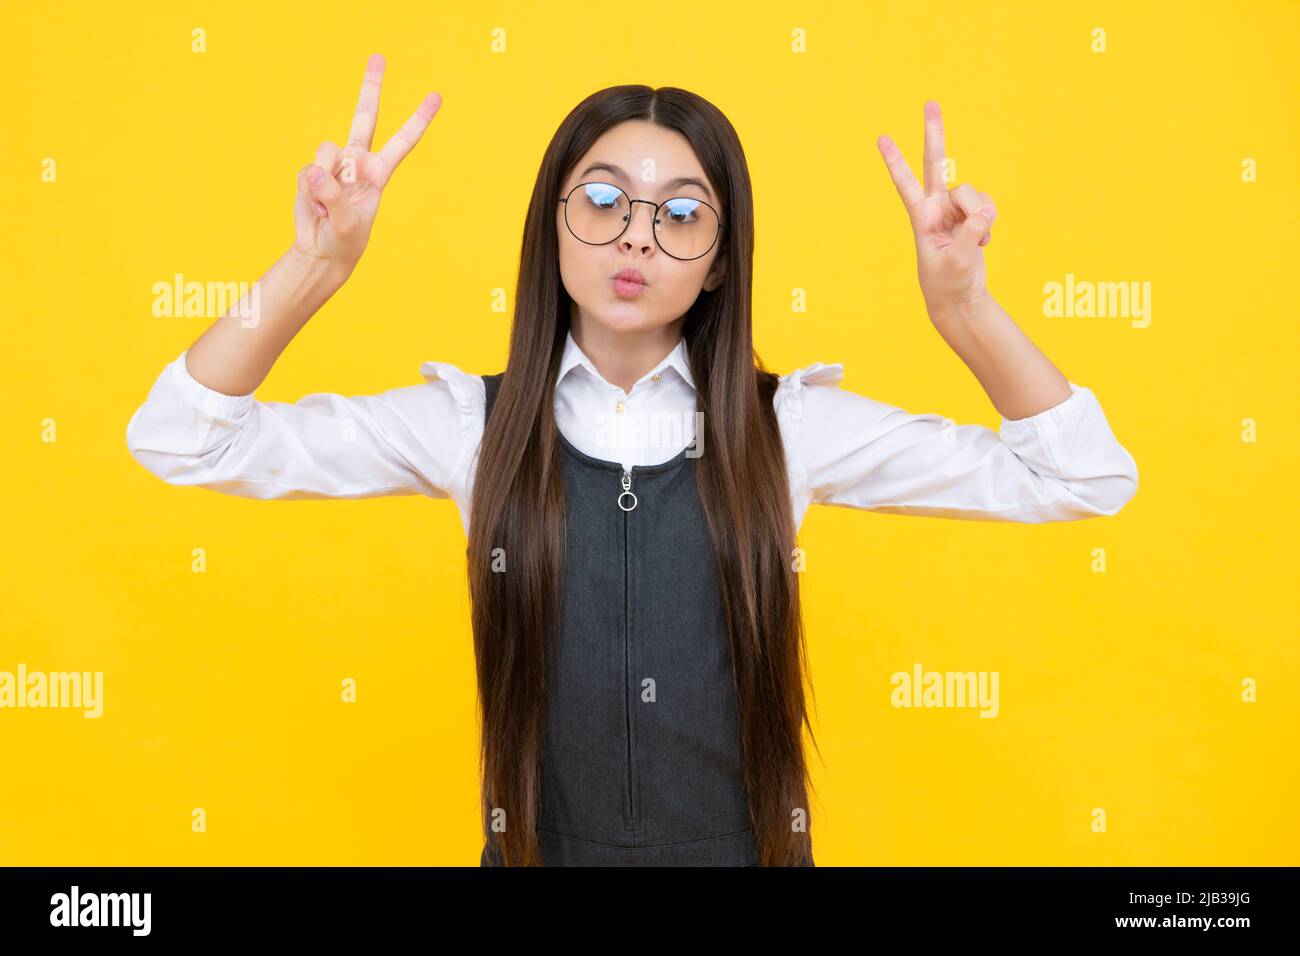 Lustiges Gesicht. Teenager Kind Mädchen zeigt Finger Siegeszeichen. Nummer zwei, auf gelbem Hintergrund isoliertes V-Zeichen-Symbol. Stockfoto